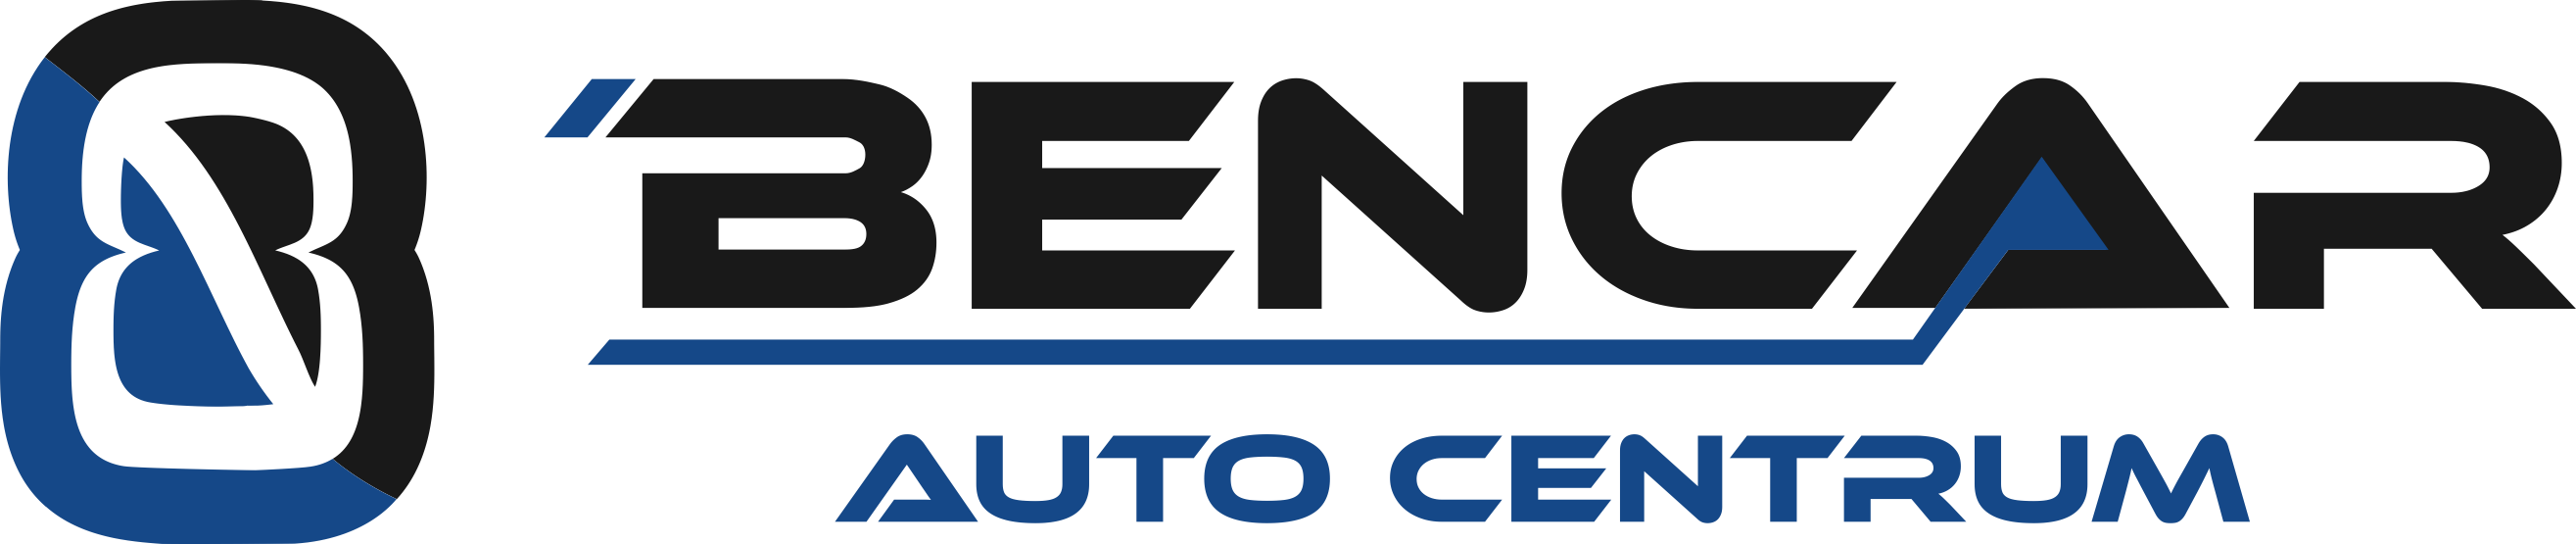 Bencar – Instalacje gazowe do samochodów